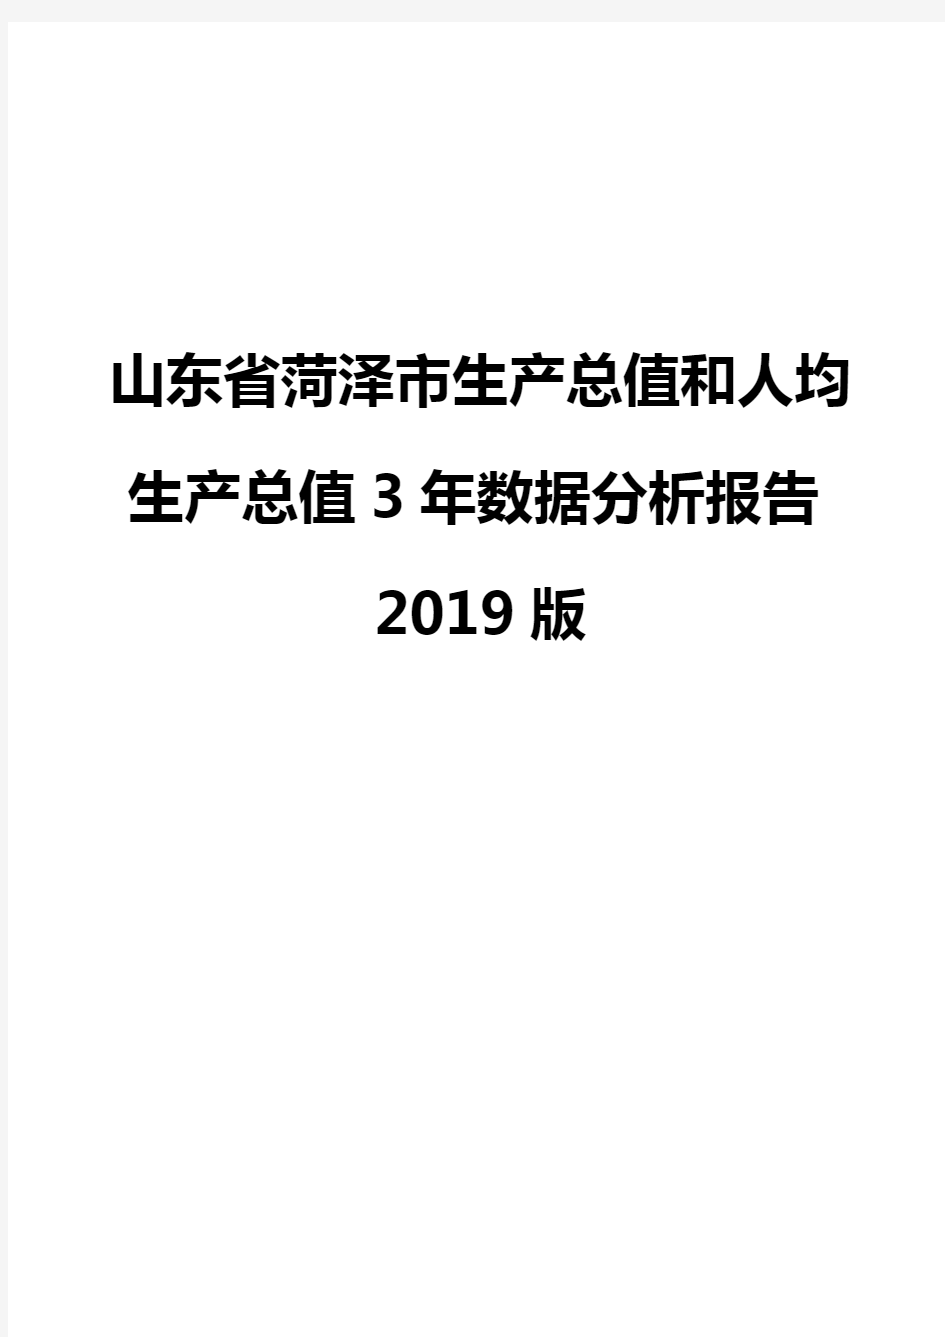 山东省菏泽市生产总值和人均生产总值3年数据分析报告2019版